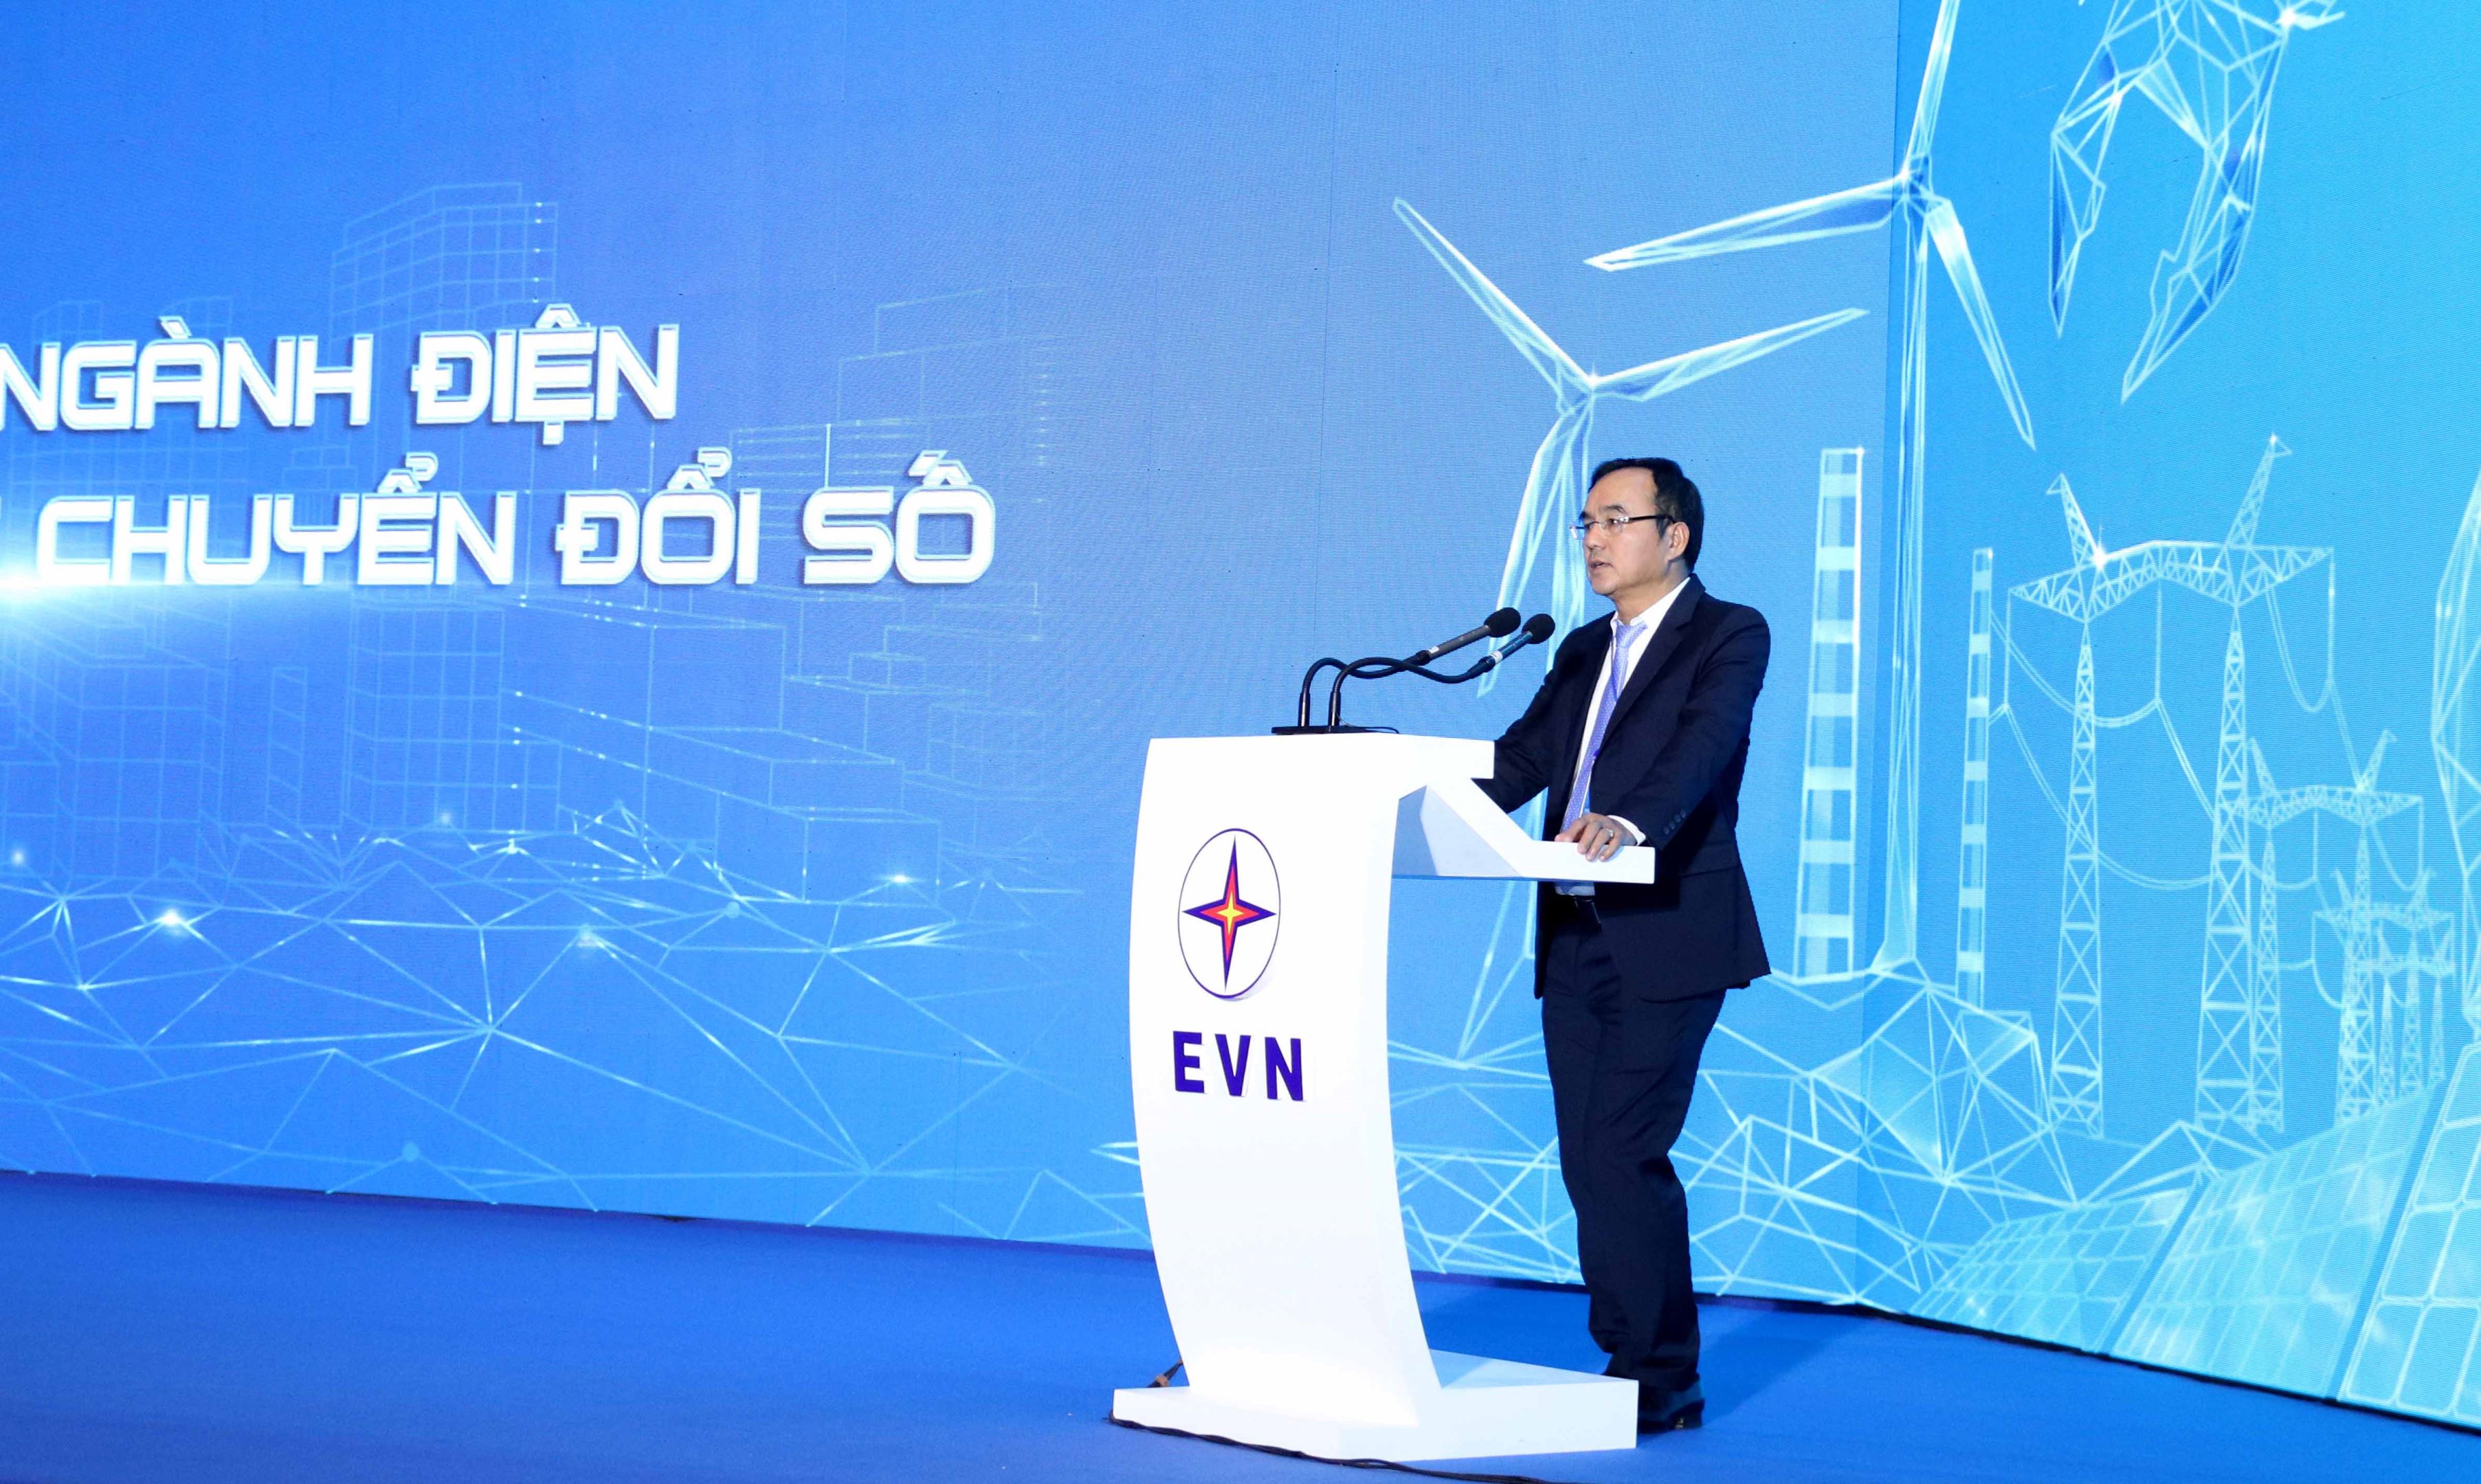 EVN phấn đấu trở thành tập đoàn năng lượng – công nghệ với mức độ tự động hoá cao